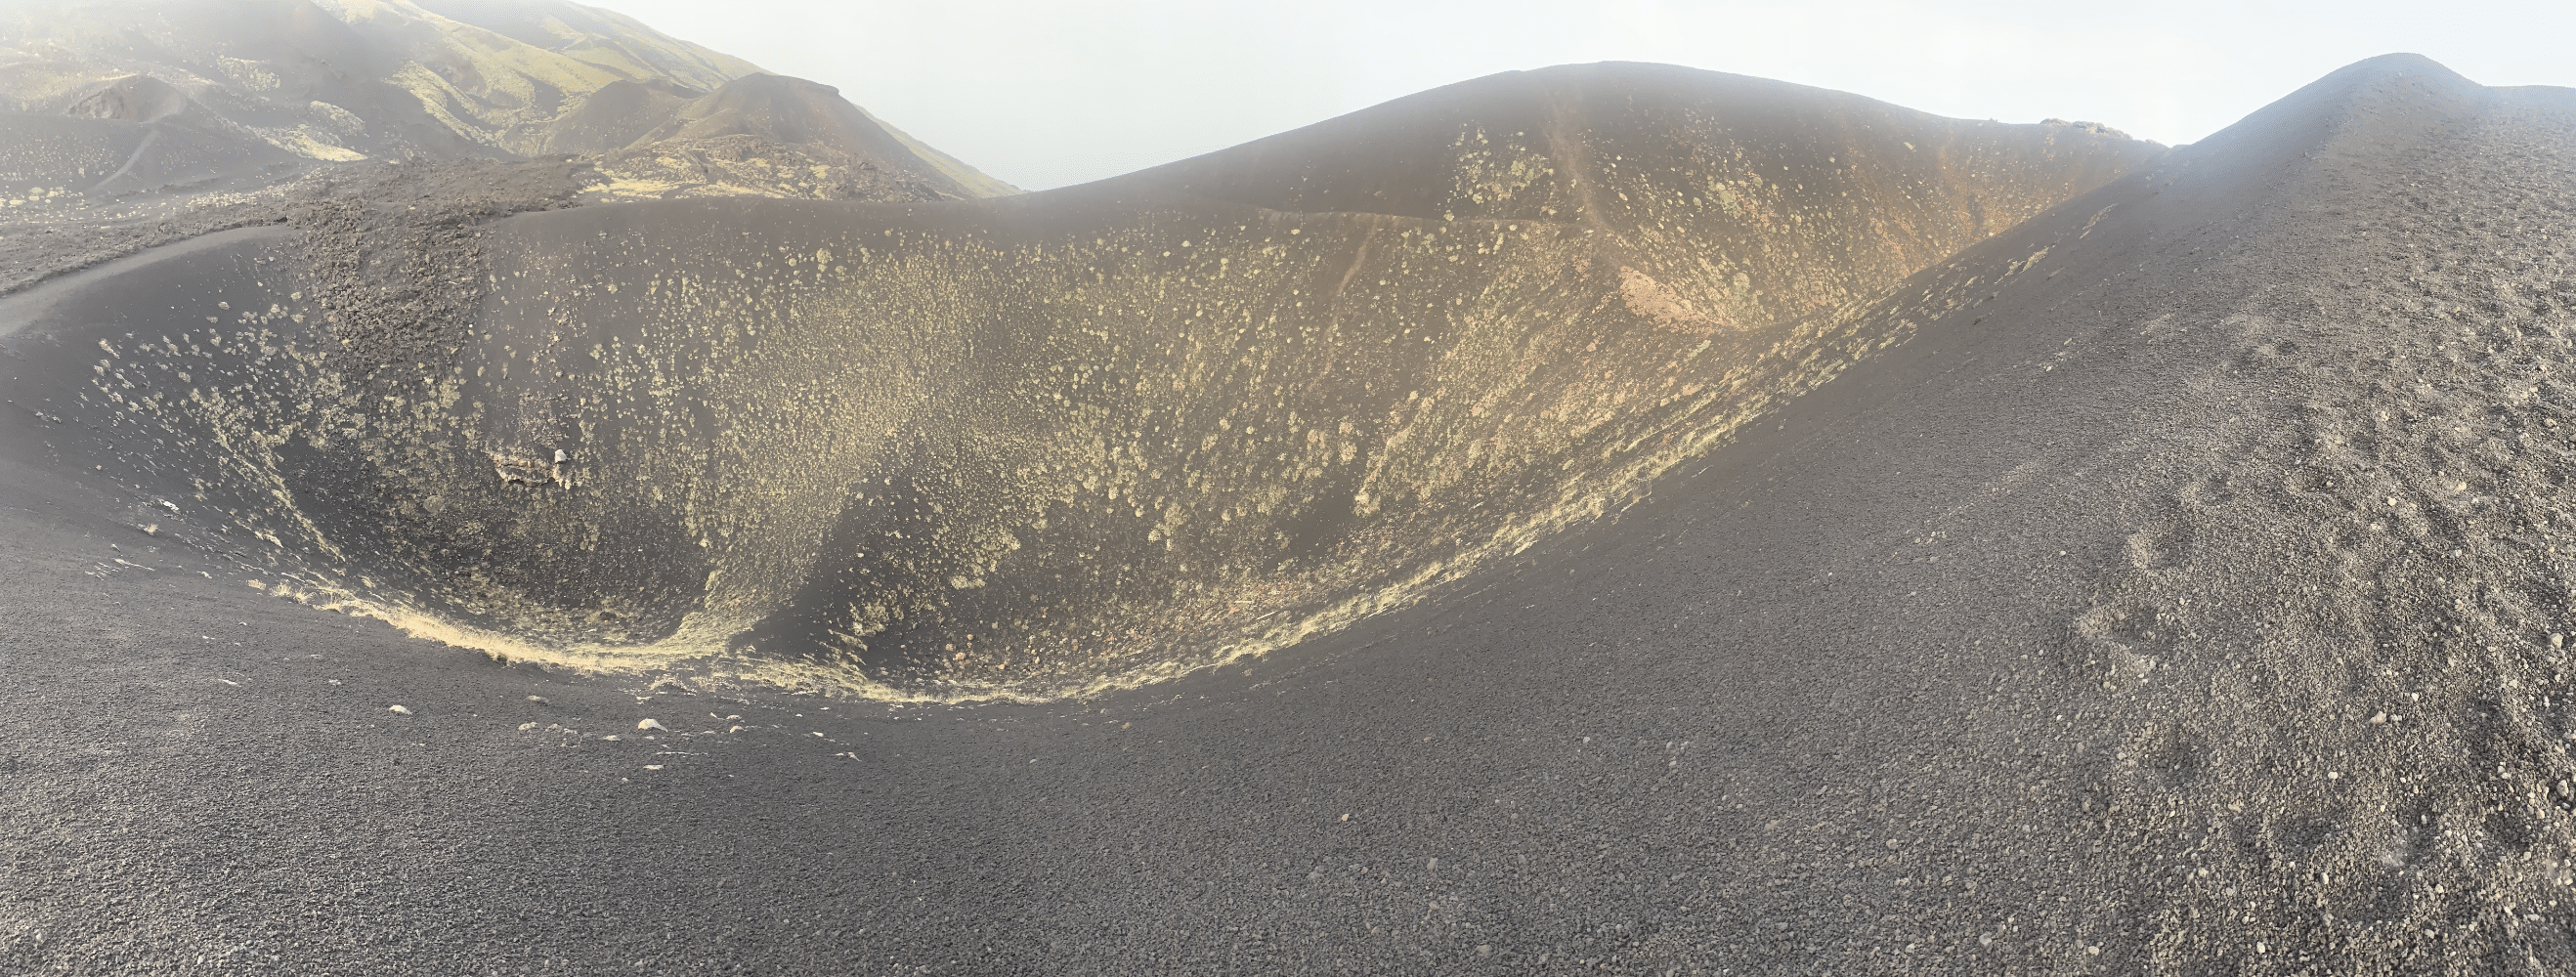 excursion sur l'etna : promenade sur les crateres